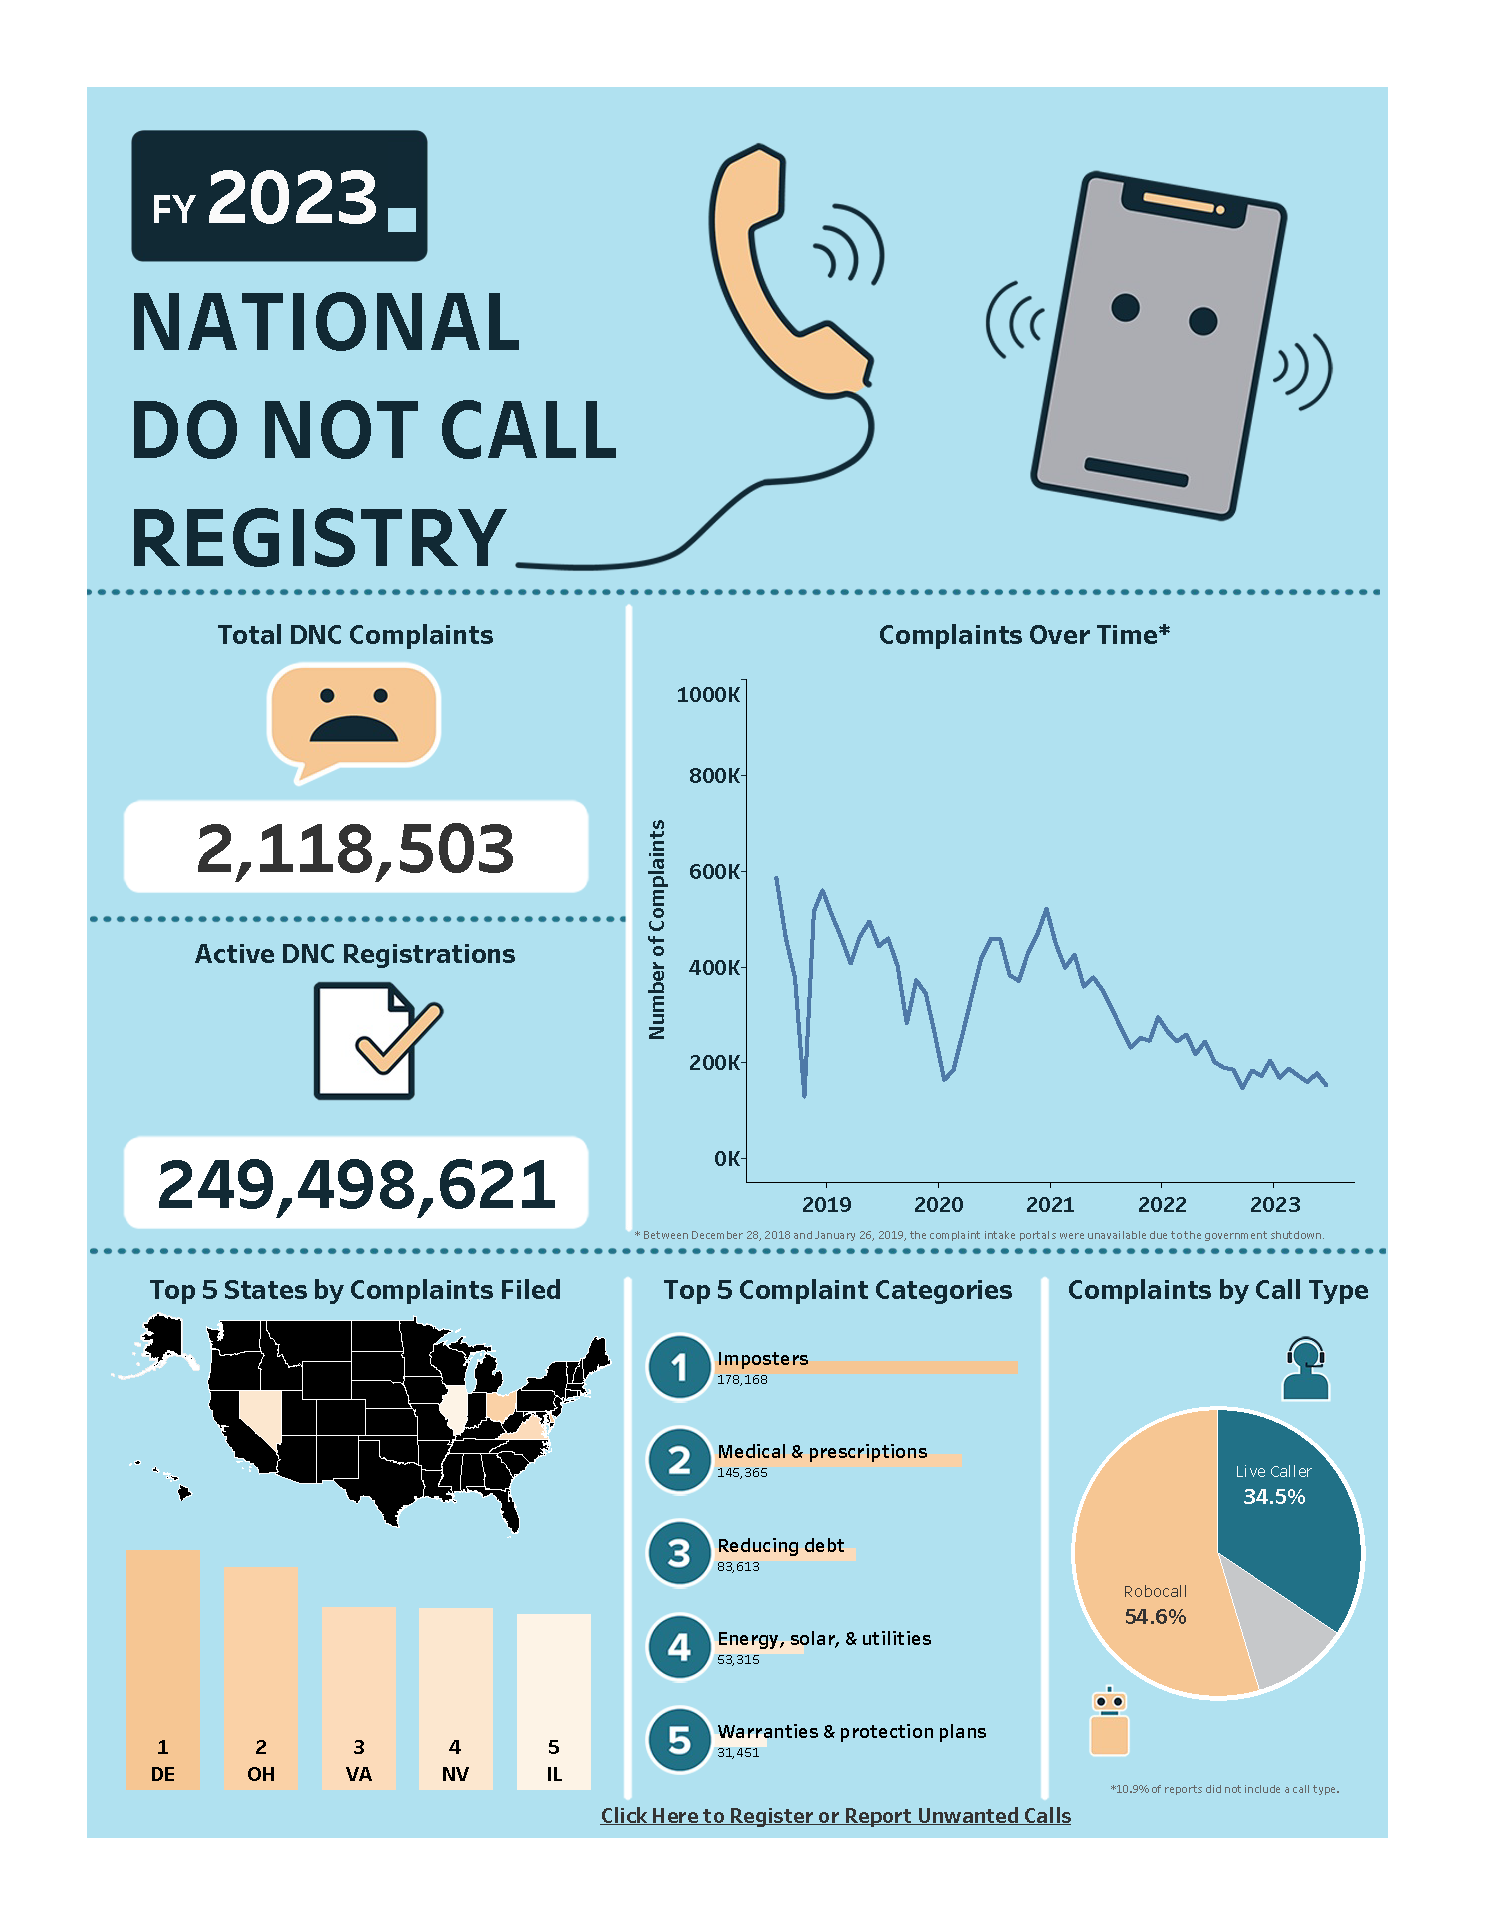 FY 2023 Do Not Call Complaints. Total DNC Complaints: 2,118,503. Active DNC Registrations: 249,498,621